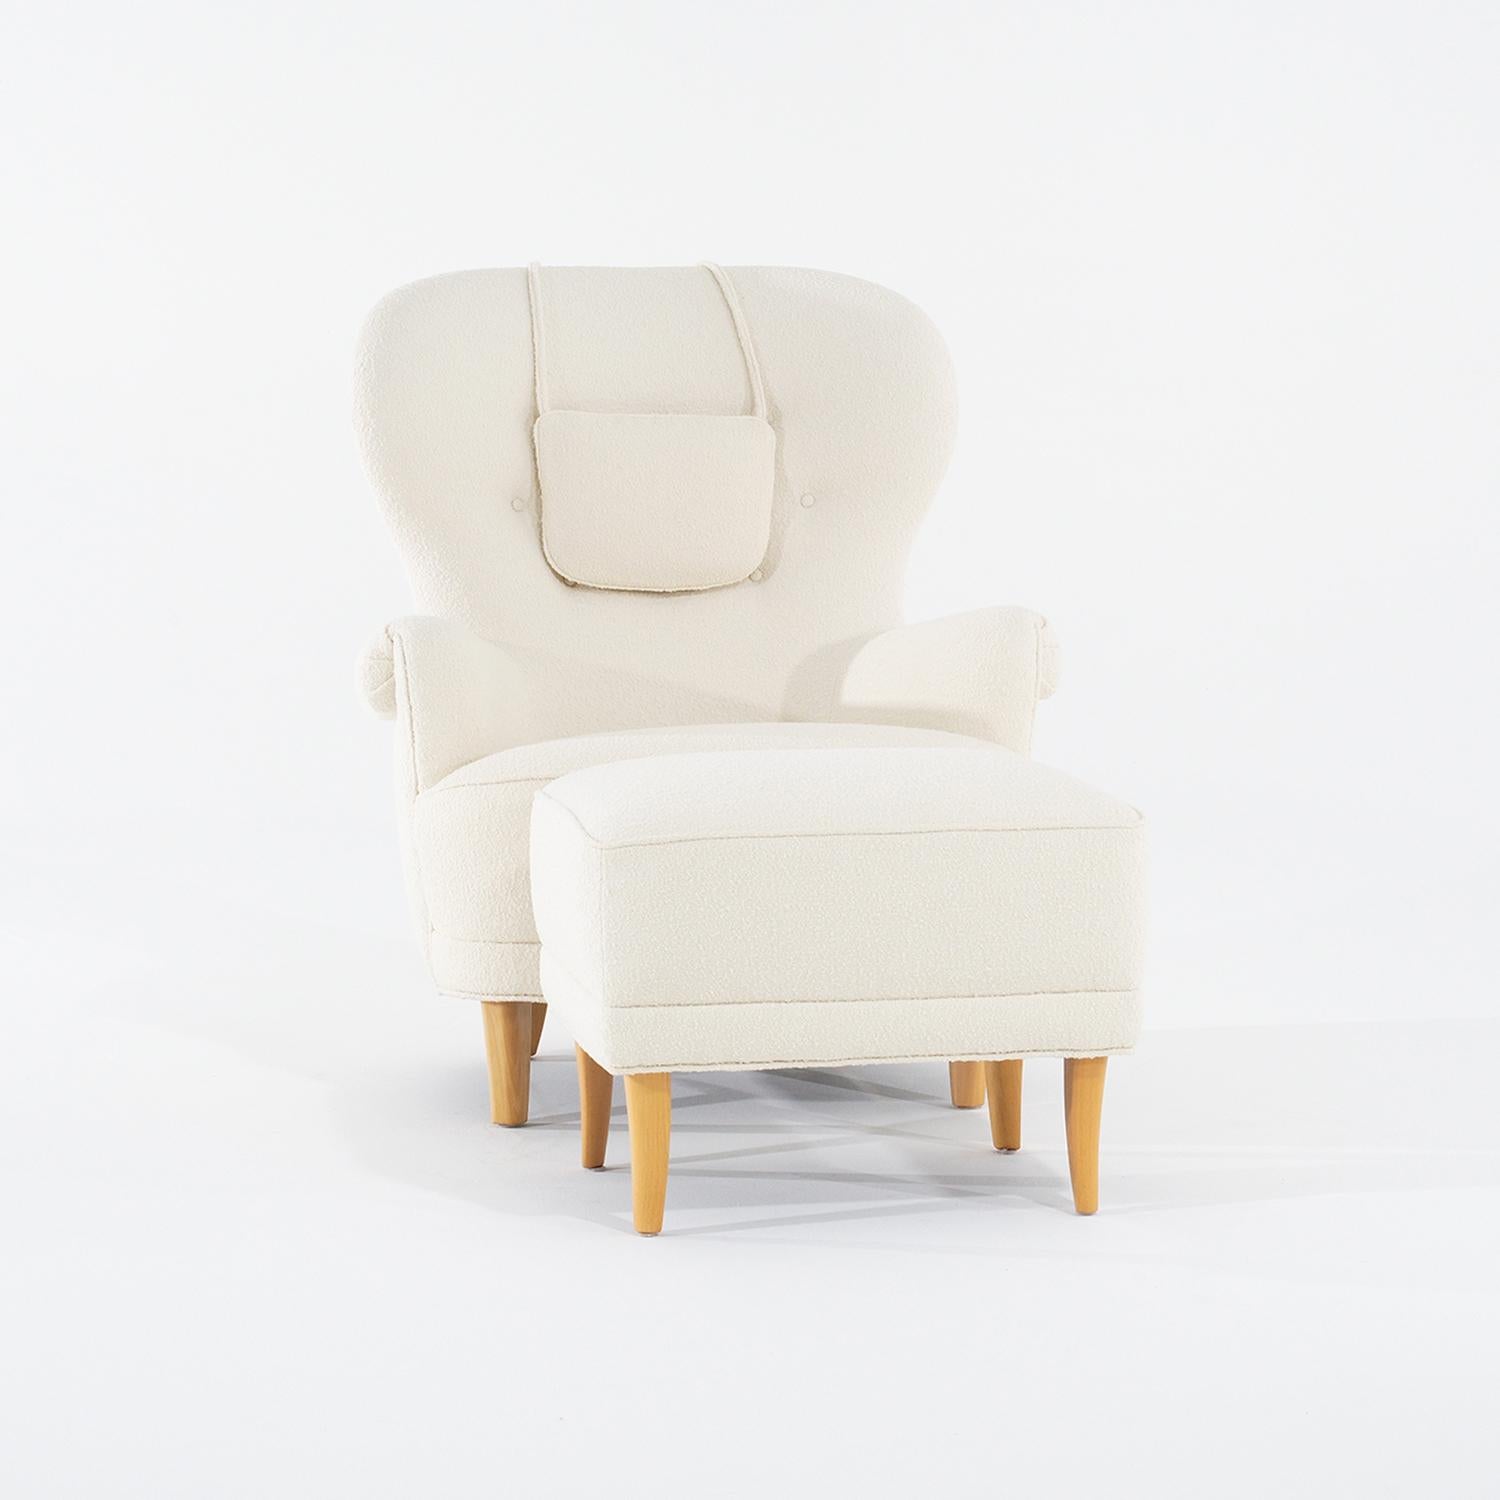 Ensemble suédois vintage du milieu du siècle, composé d'une chaise longue et d'un pouf, conçu par Carl Malmsten et produit par O.H. Condit en bon état. Le grand fauteuil de lecture scandinave est composé d'un appui-tête, d'un dossier légèrement